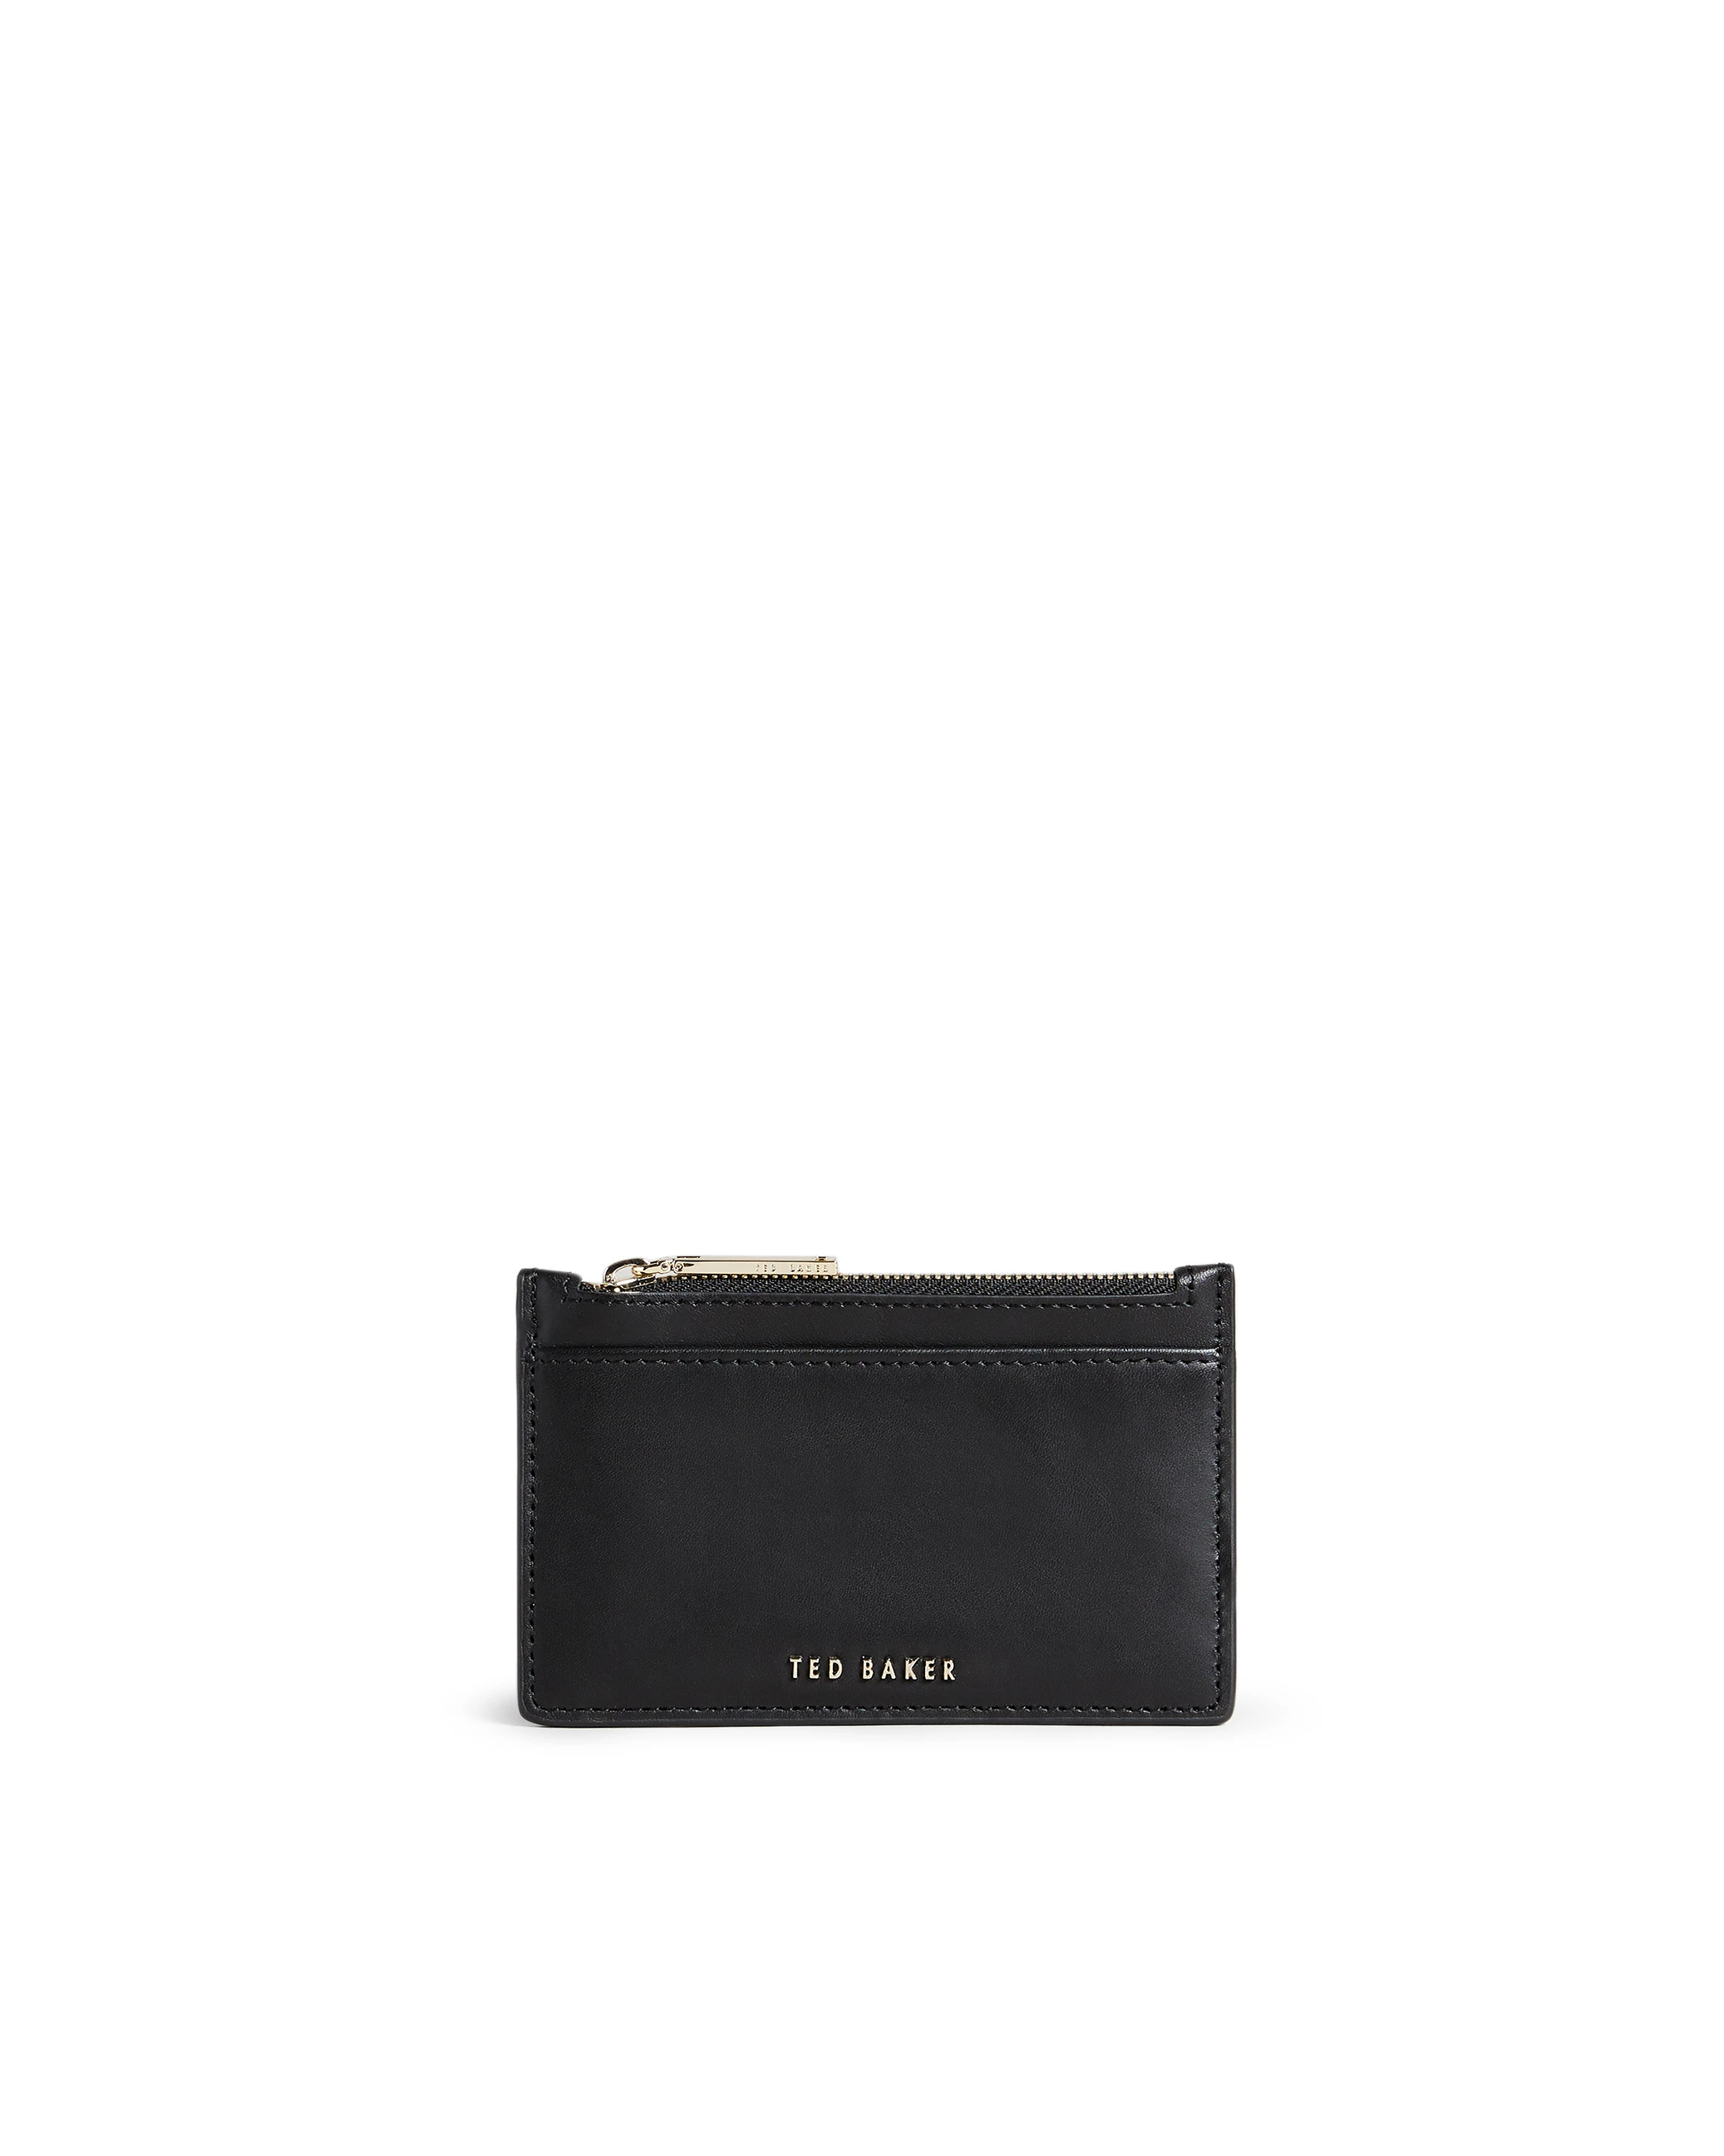 TED BAKER mini財布財布 - 財布